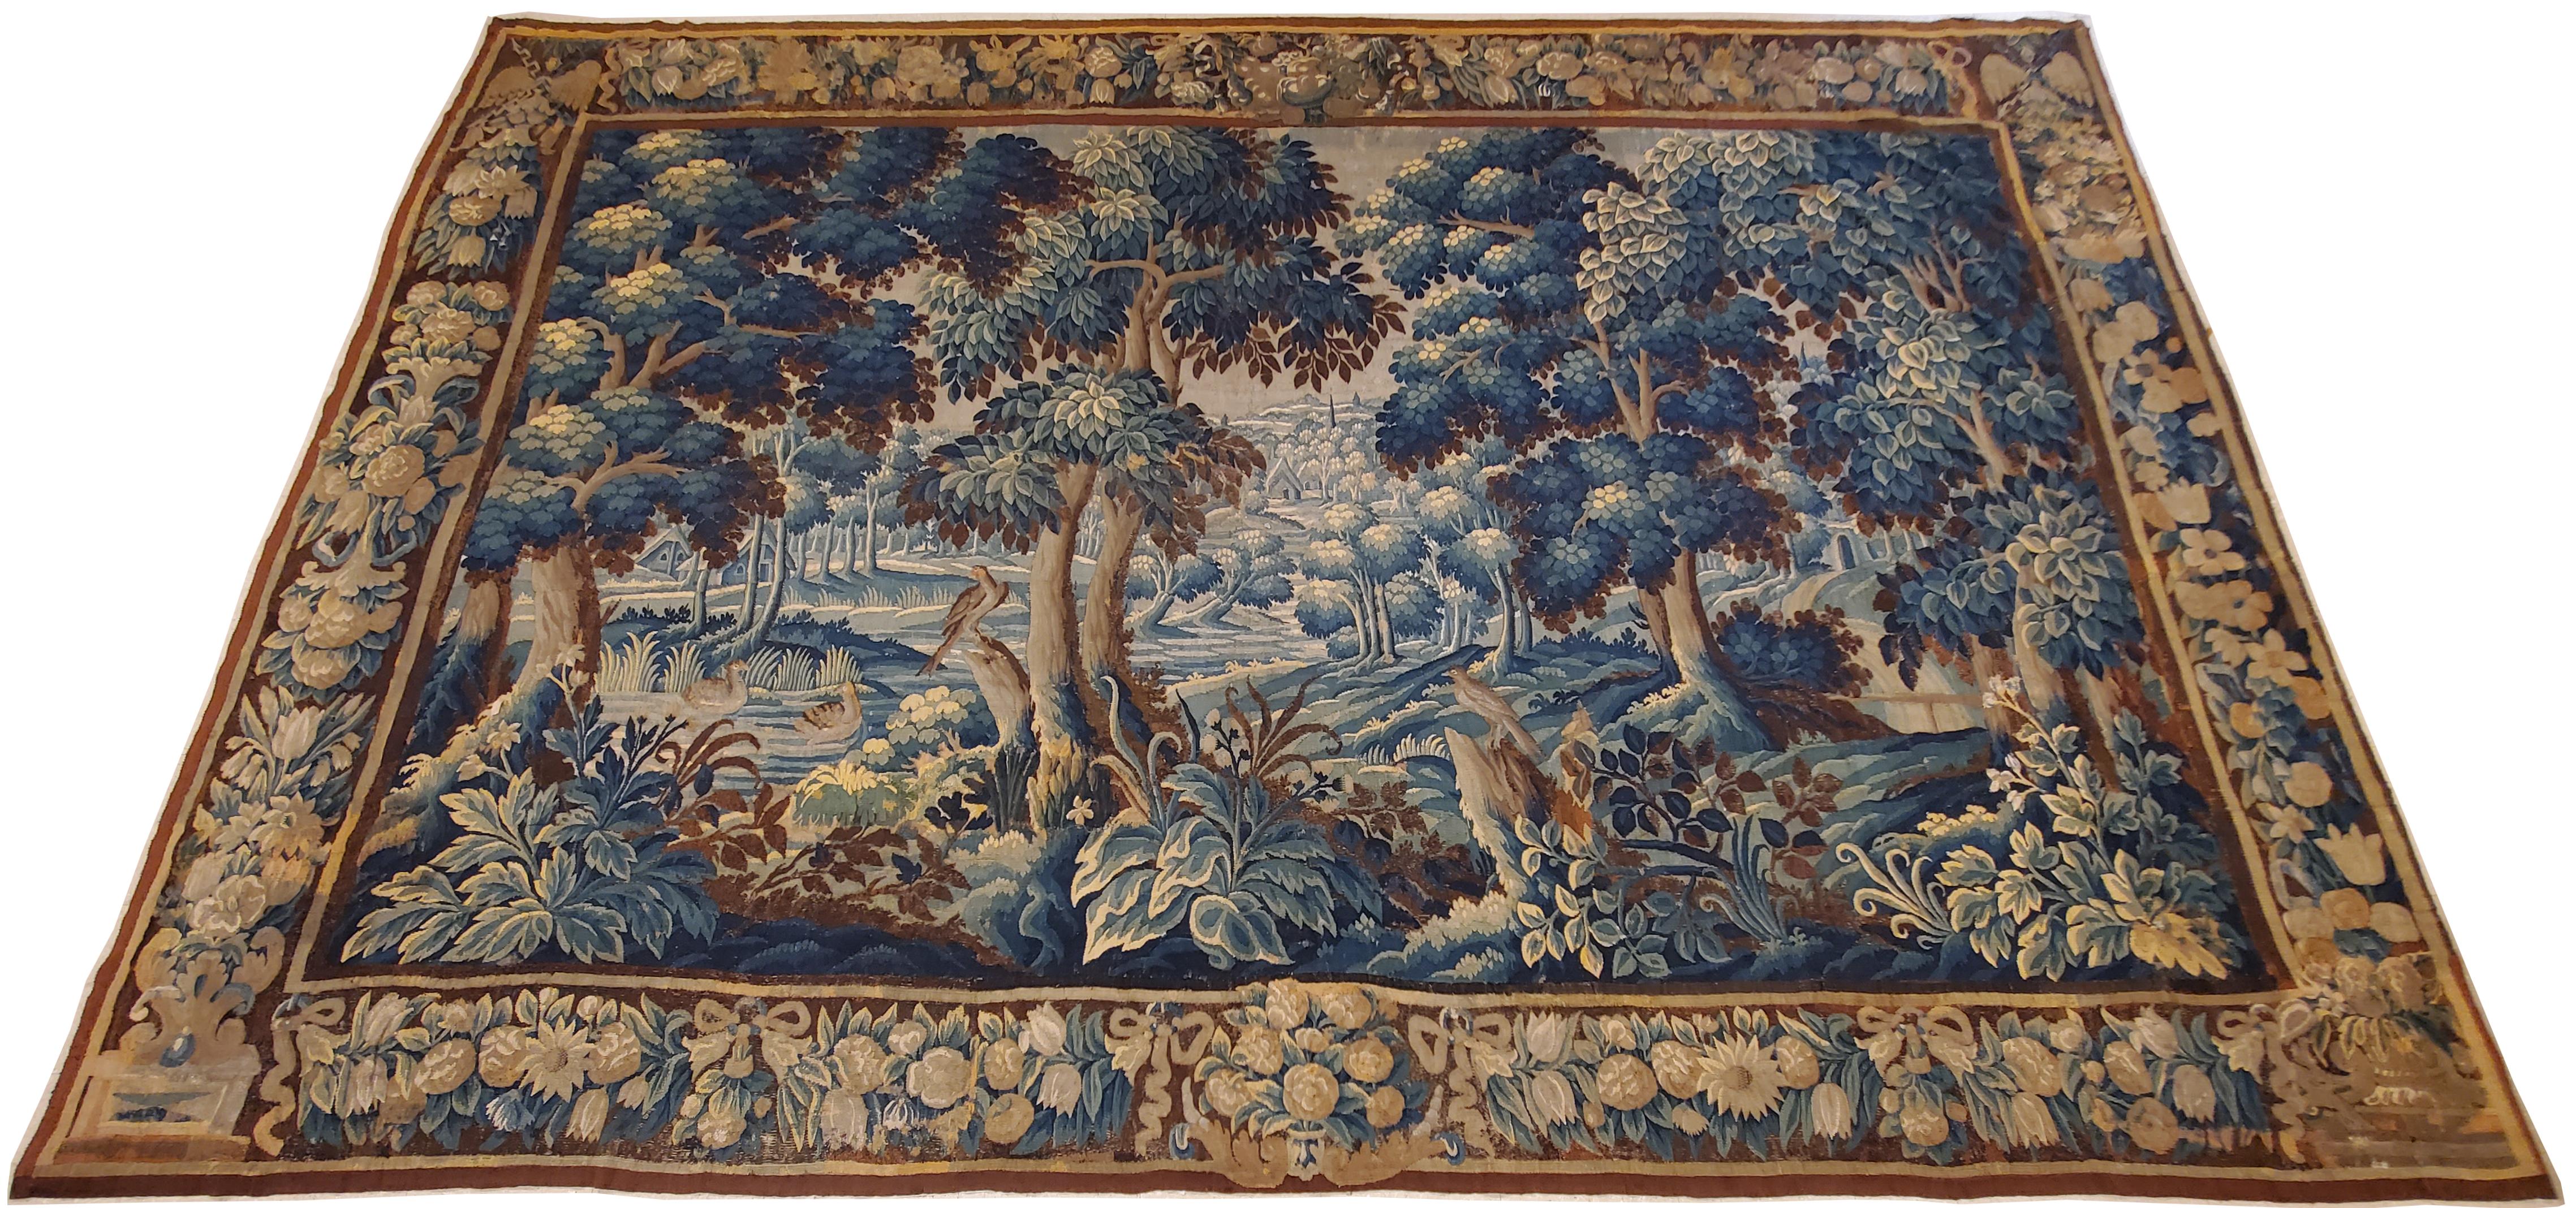 Grande tapisserie flamande en verdure du XVIIe siècle, représentant une scène paisible dans un cadre forestier, avec des arbres majestueux à droite et à gauche au premier plan, un oiseau exotique se reposant dans l'herbe sous leur ombre, et d'autres